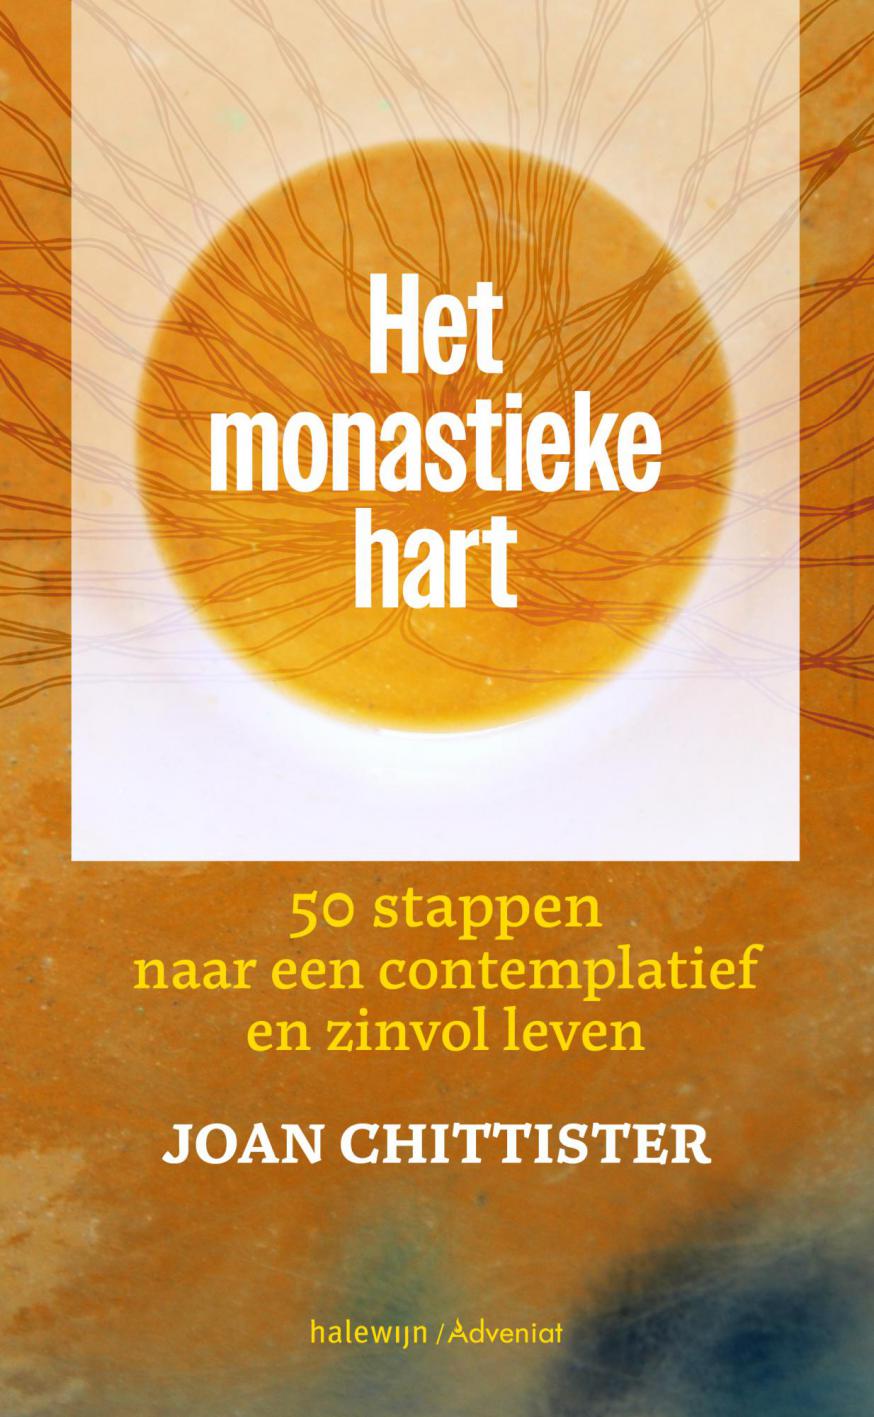 ‘Het monastieke hart’ van Joan Chittister is in de maand maart met korting te koop via de website van Halewijn. 